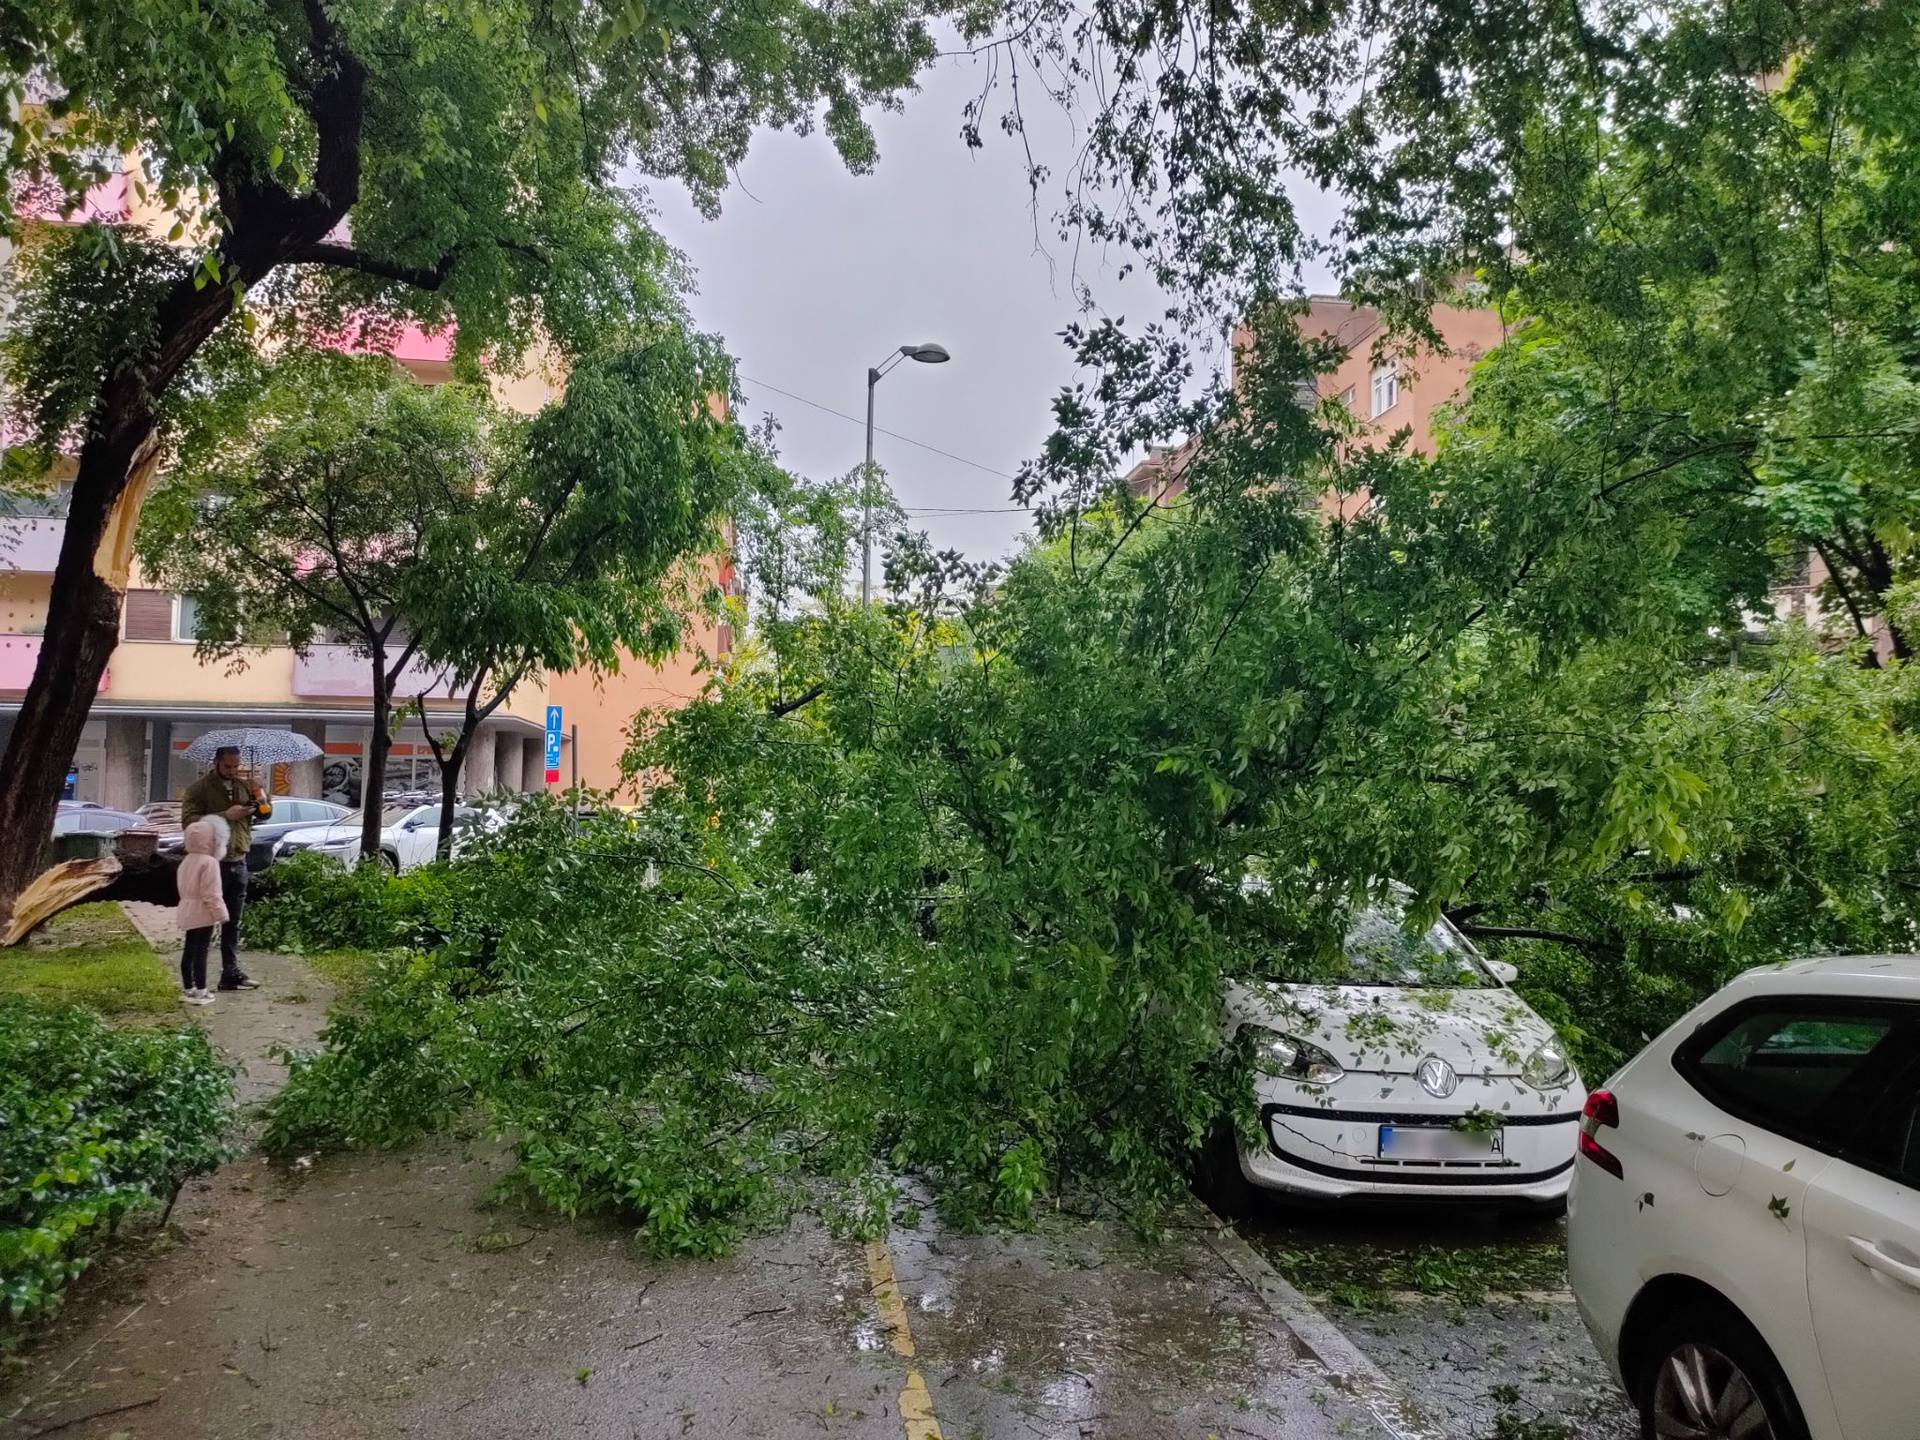 Nekoliko intervencija zbog palih drveća u Zagrebu: U Martićevoj ulici jedno je palo na automobil